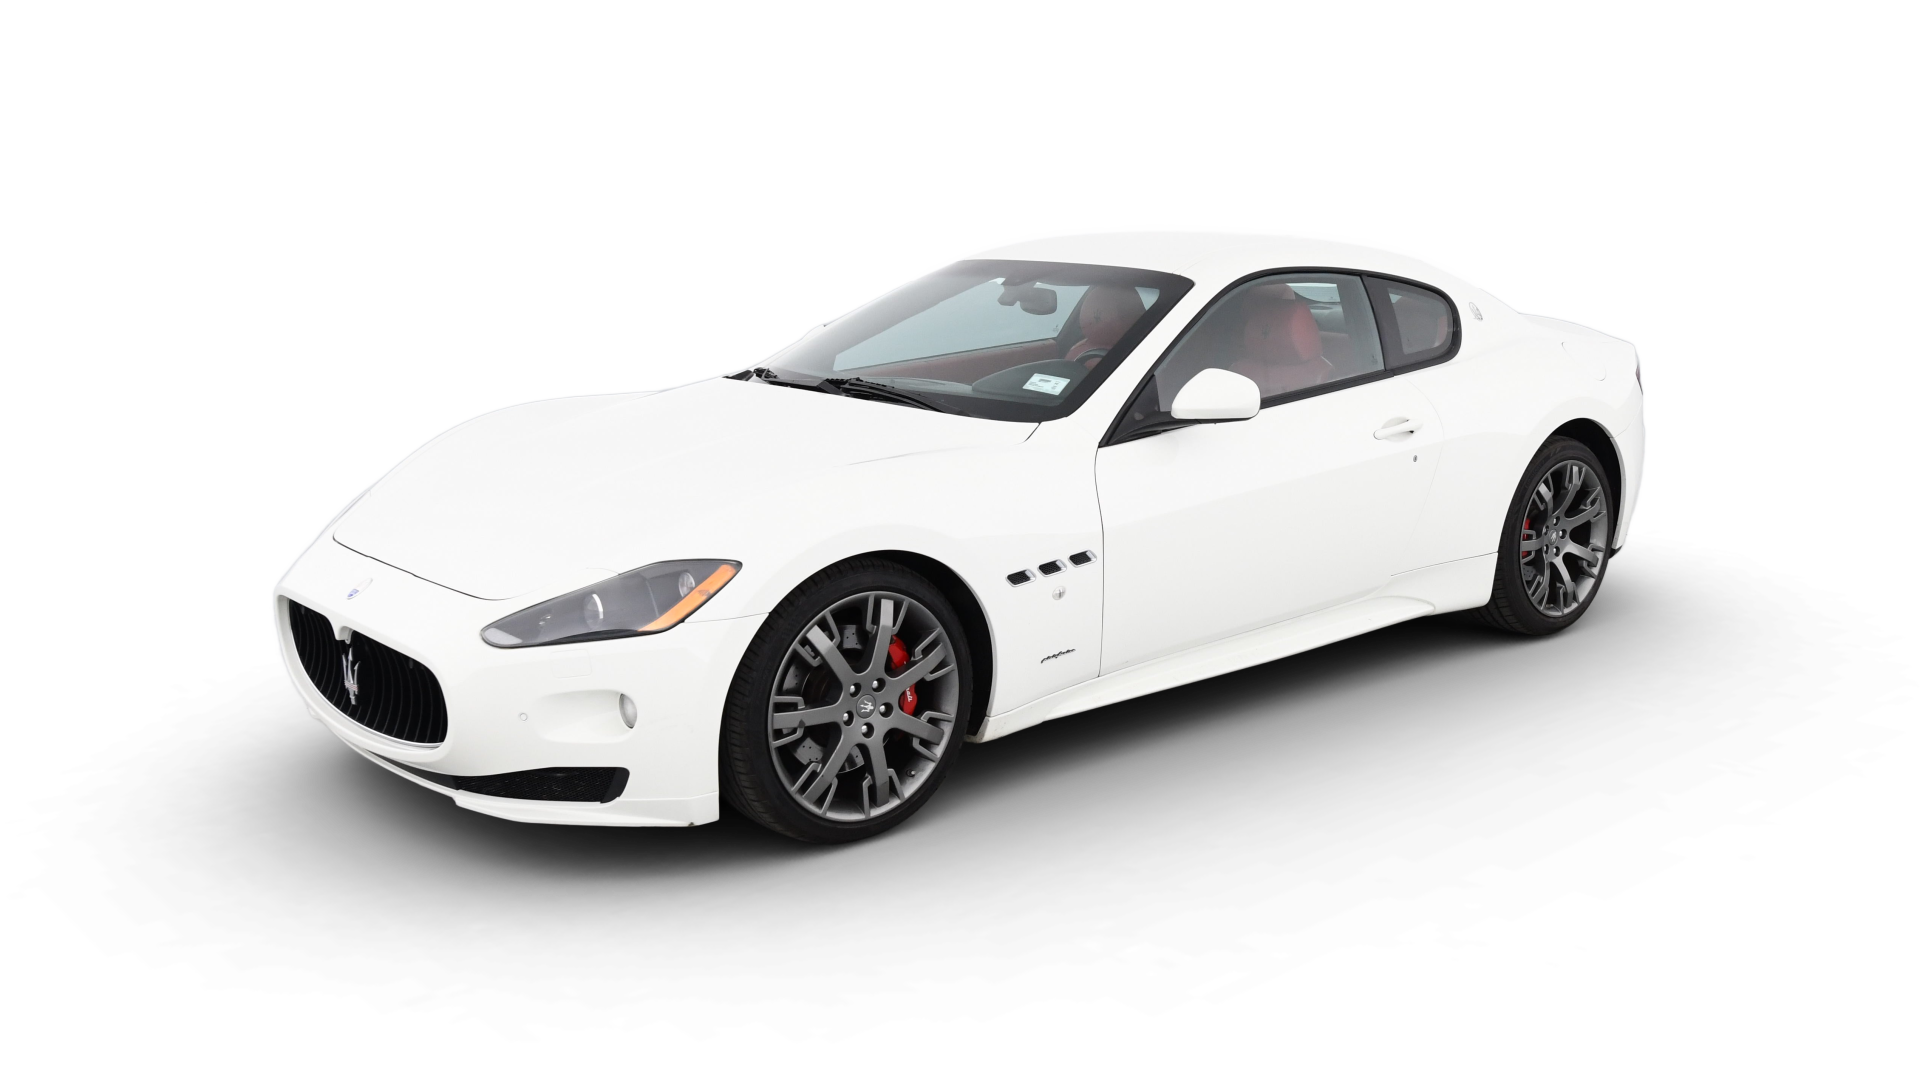 Maserati GranTurismo model image.